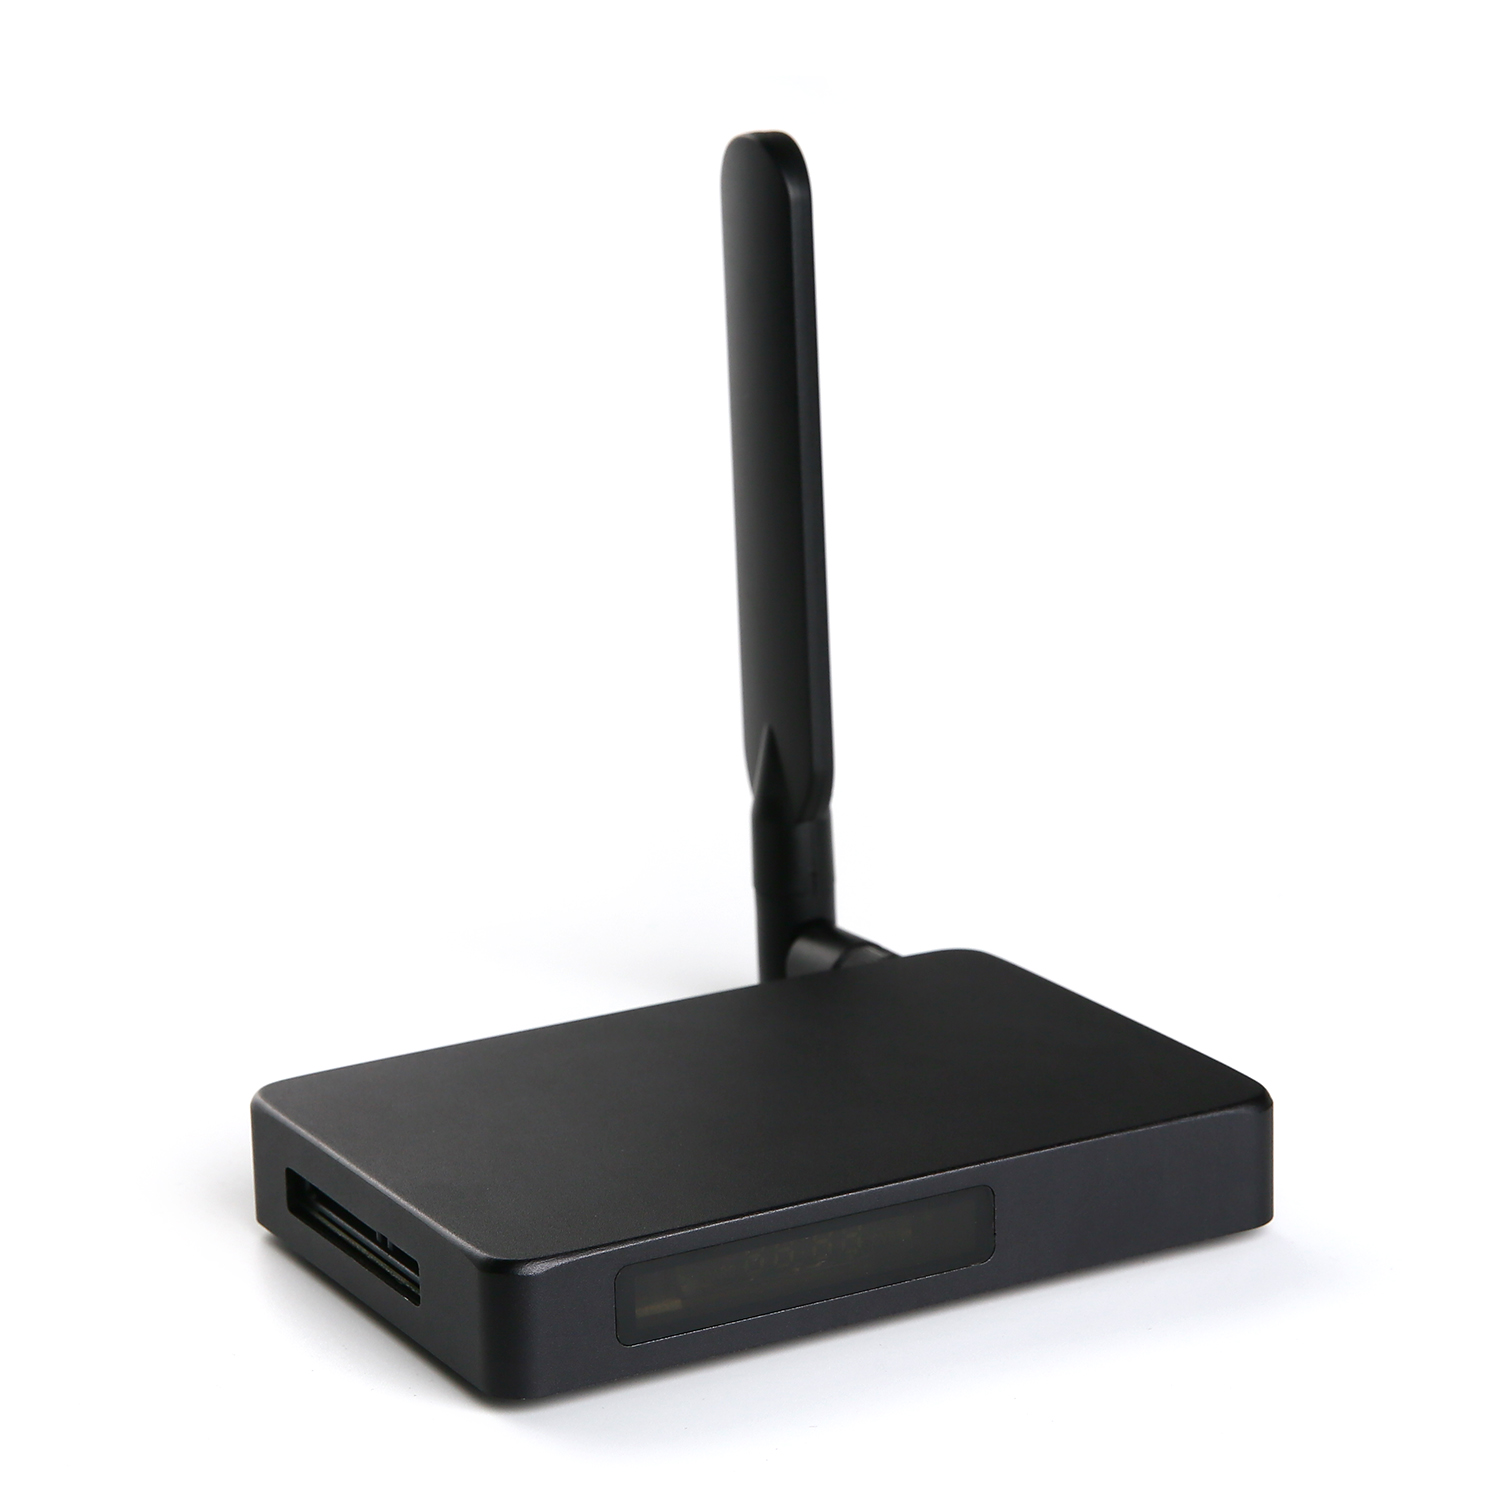 使用我们的互联网电视盒解锁无限连接 - 最佳 HDMI 输入体验，由 Realtek RTD1295 提供支持